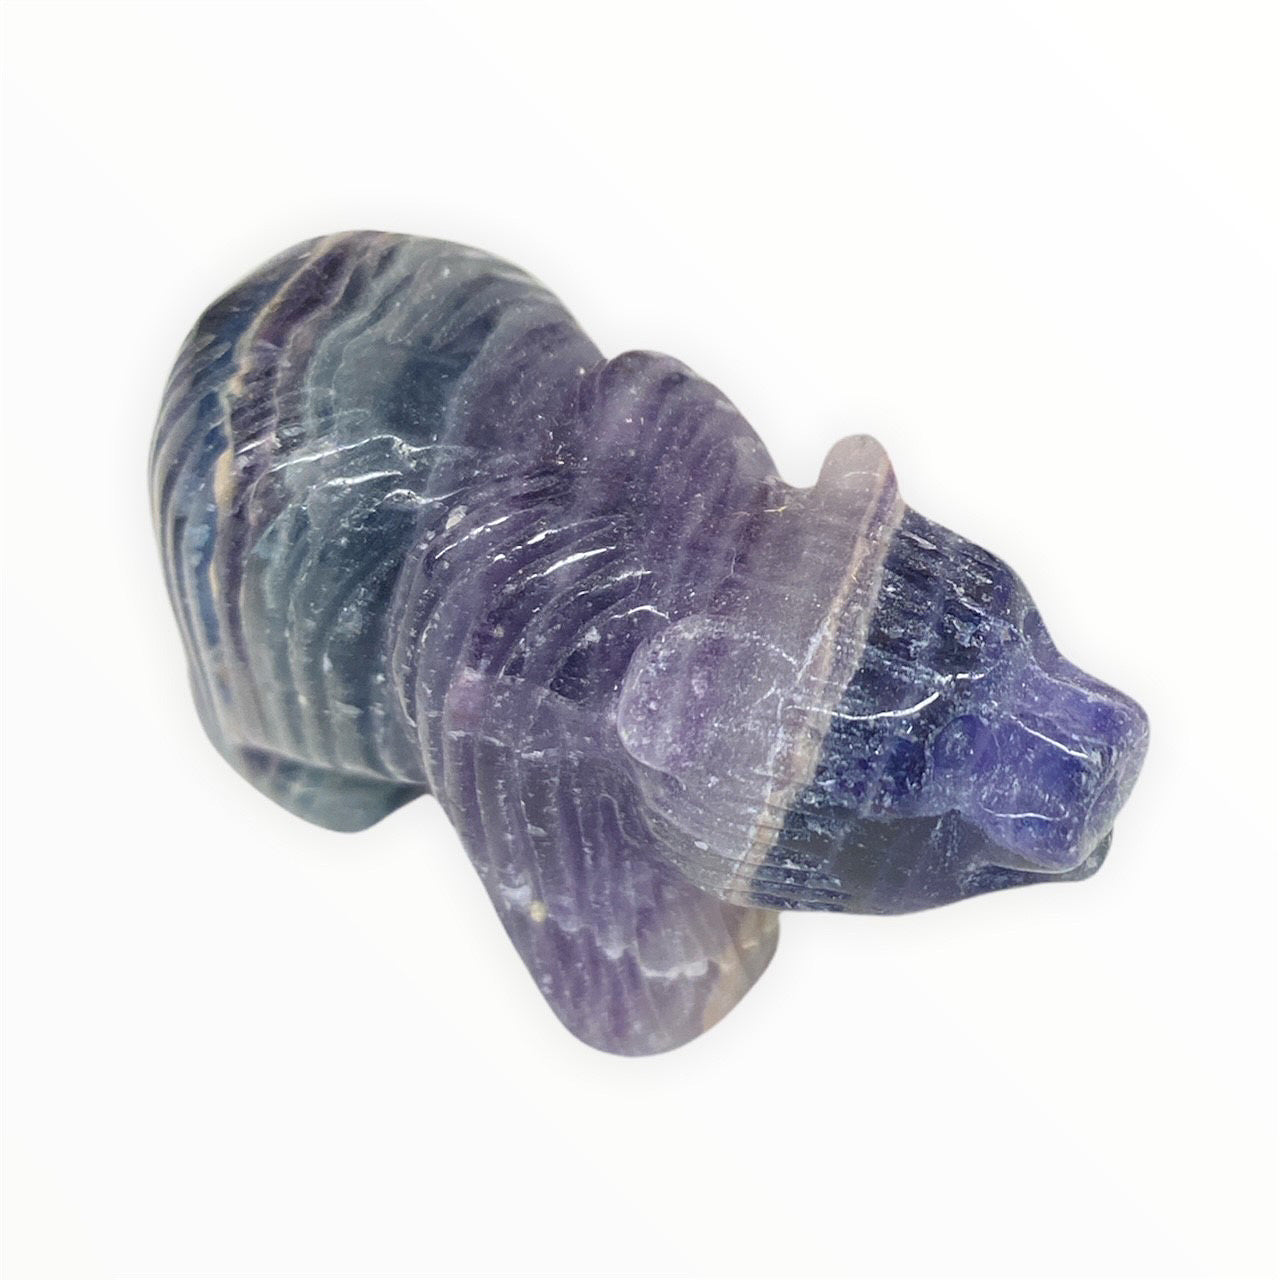 Bear - Shiney Purple Fluorite - 5 cm - China - NEW921